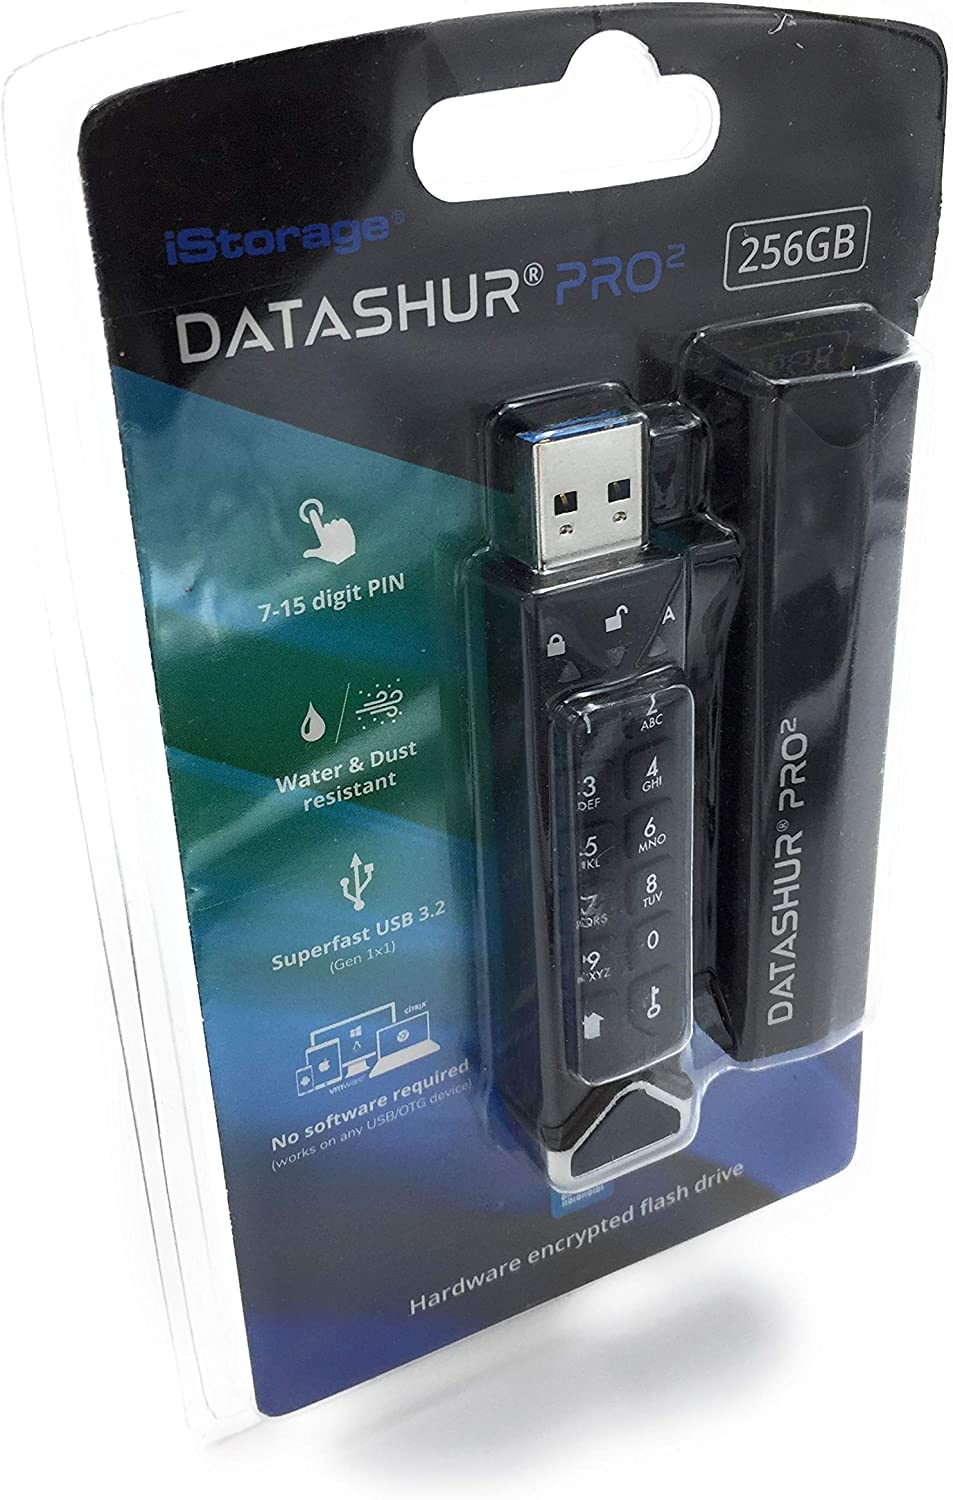 iStorage datAshur PRO2 256 GB | Unidad flash segura | Certificado FIPS 140-2 nivel 3 | Protección con contraseña | Polvo y resistente al agua | IS-FL-DP2-256-256